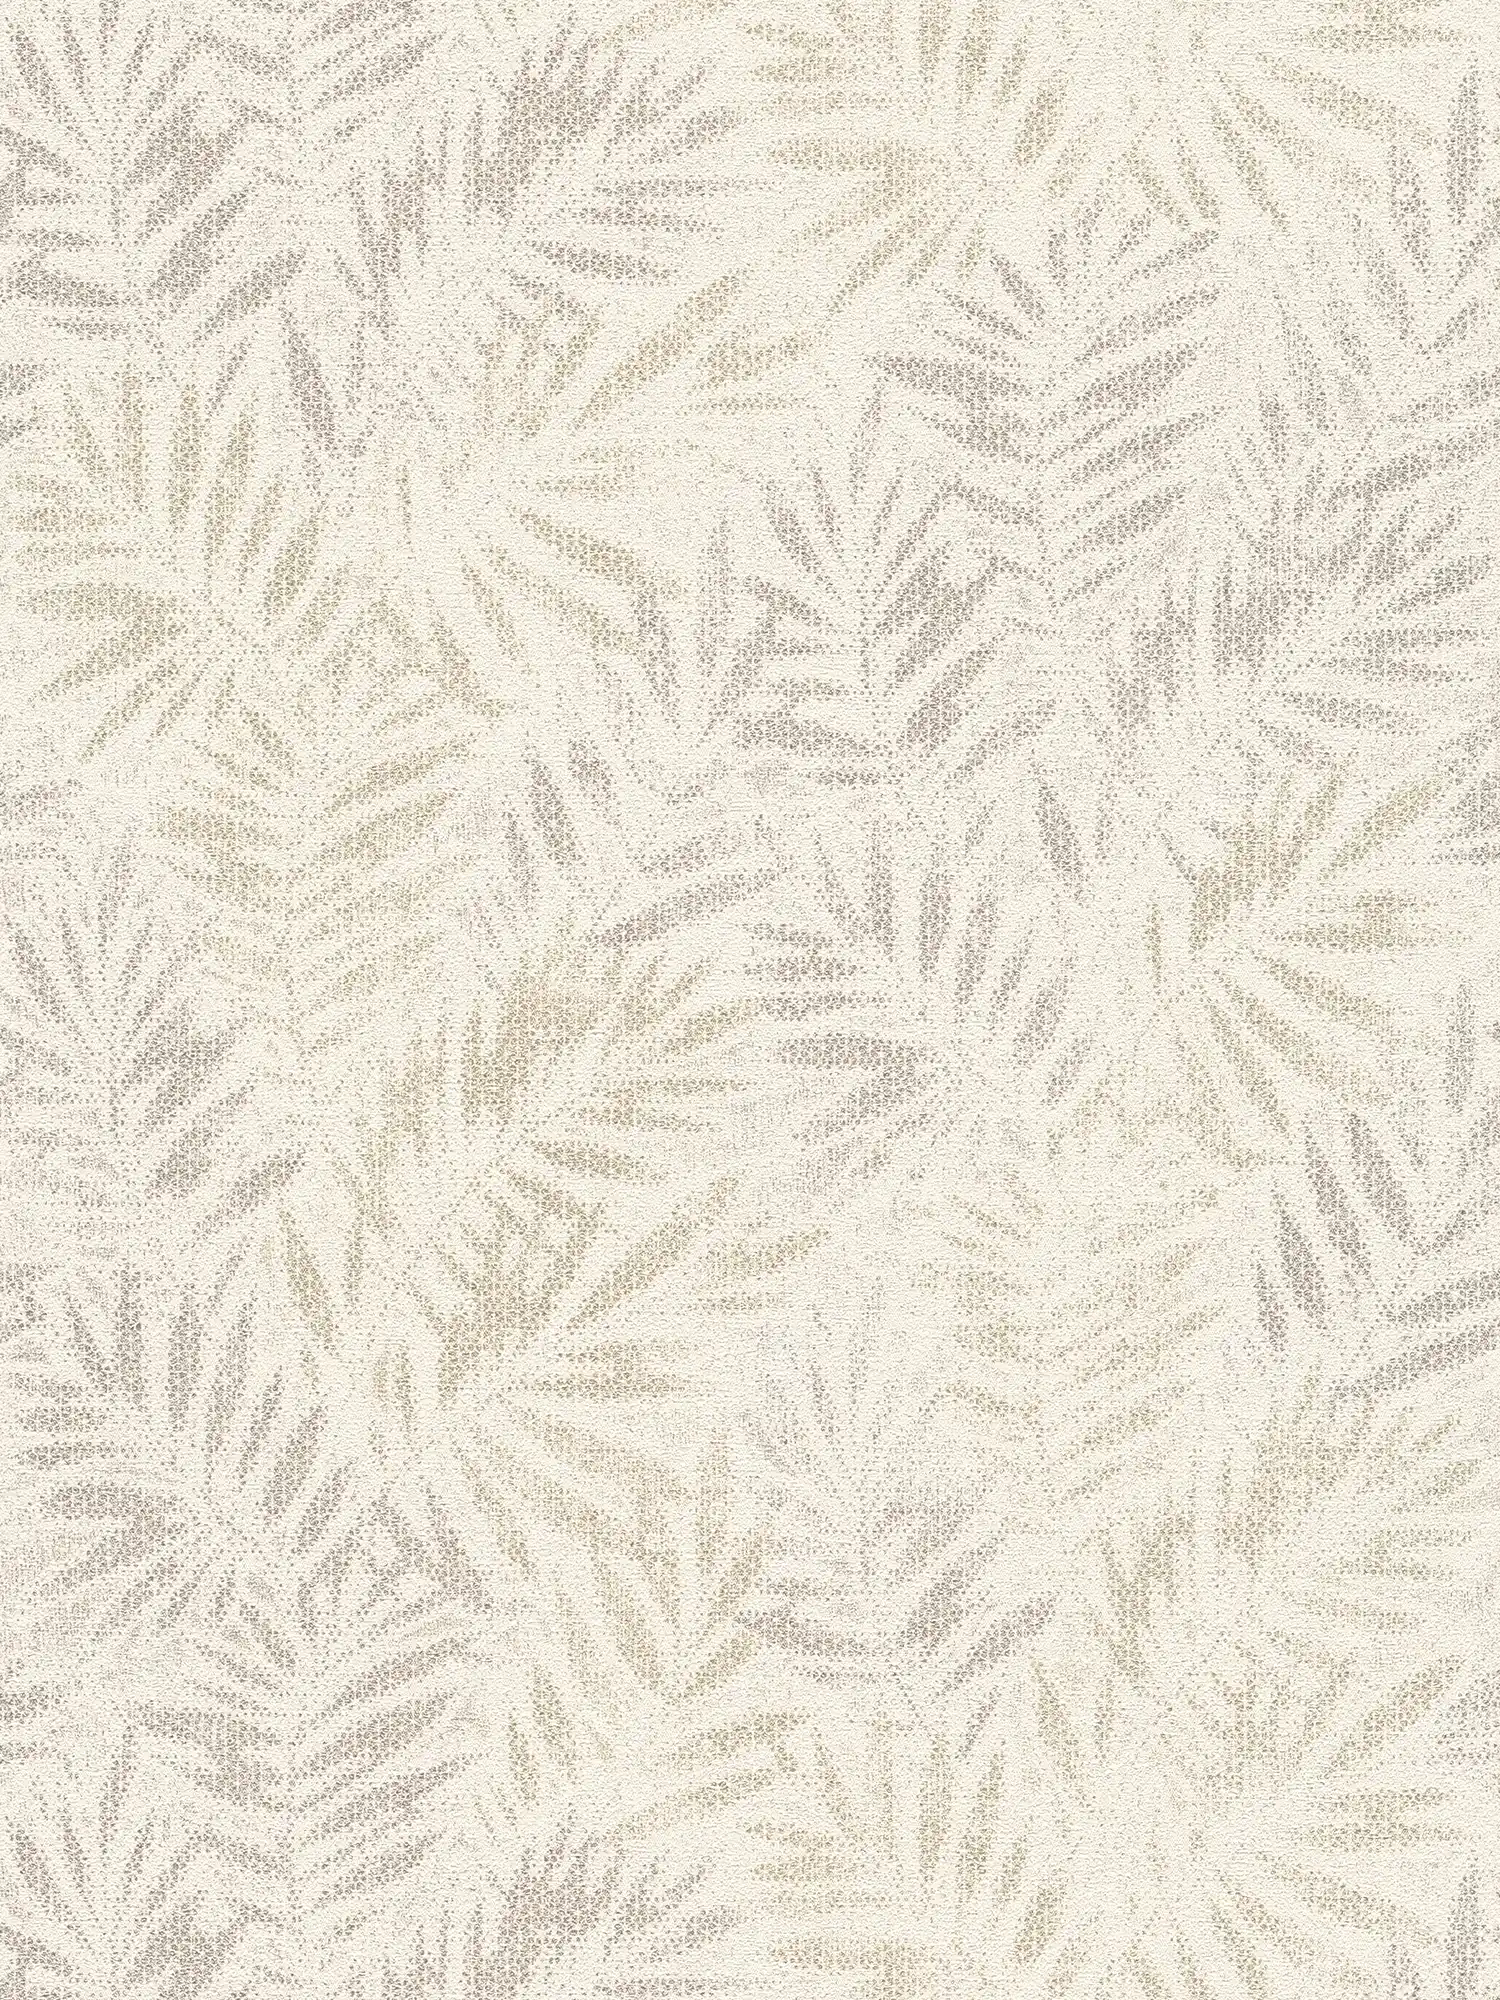 Carta da parati in tessuto non tessuto con motivo a foglie lucide - bianco, grigio, argento
